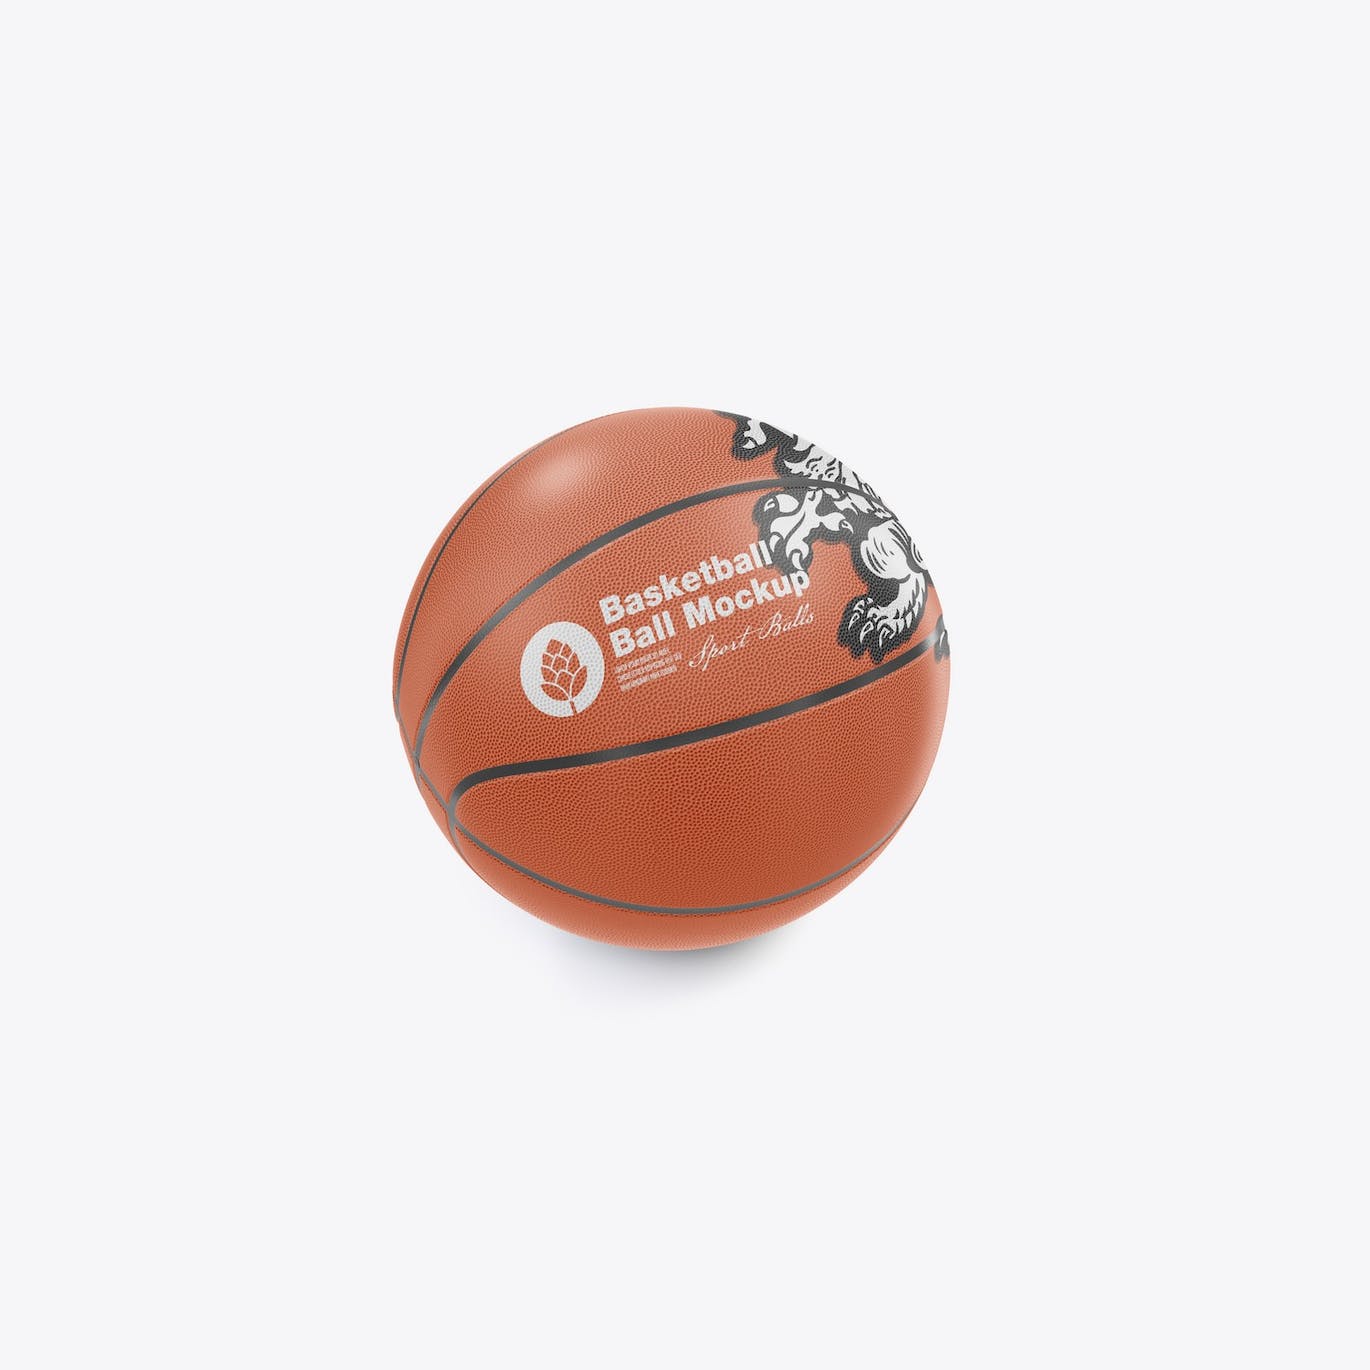 篮球运动品牌设计样机 Basketball Ball Mockup 样机素材 第7张